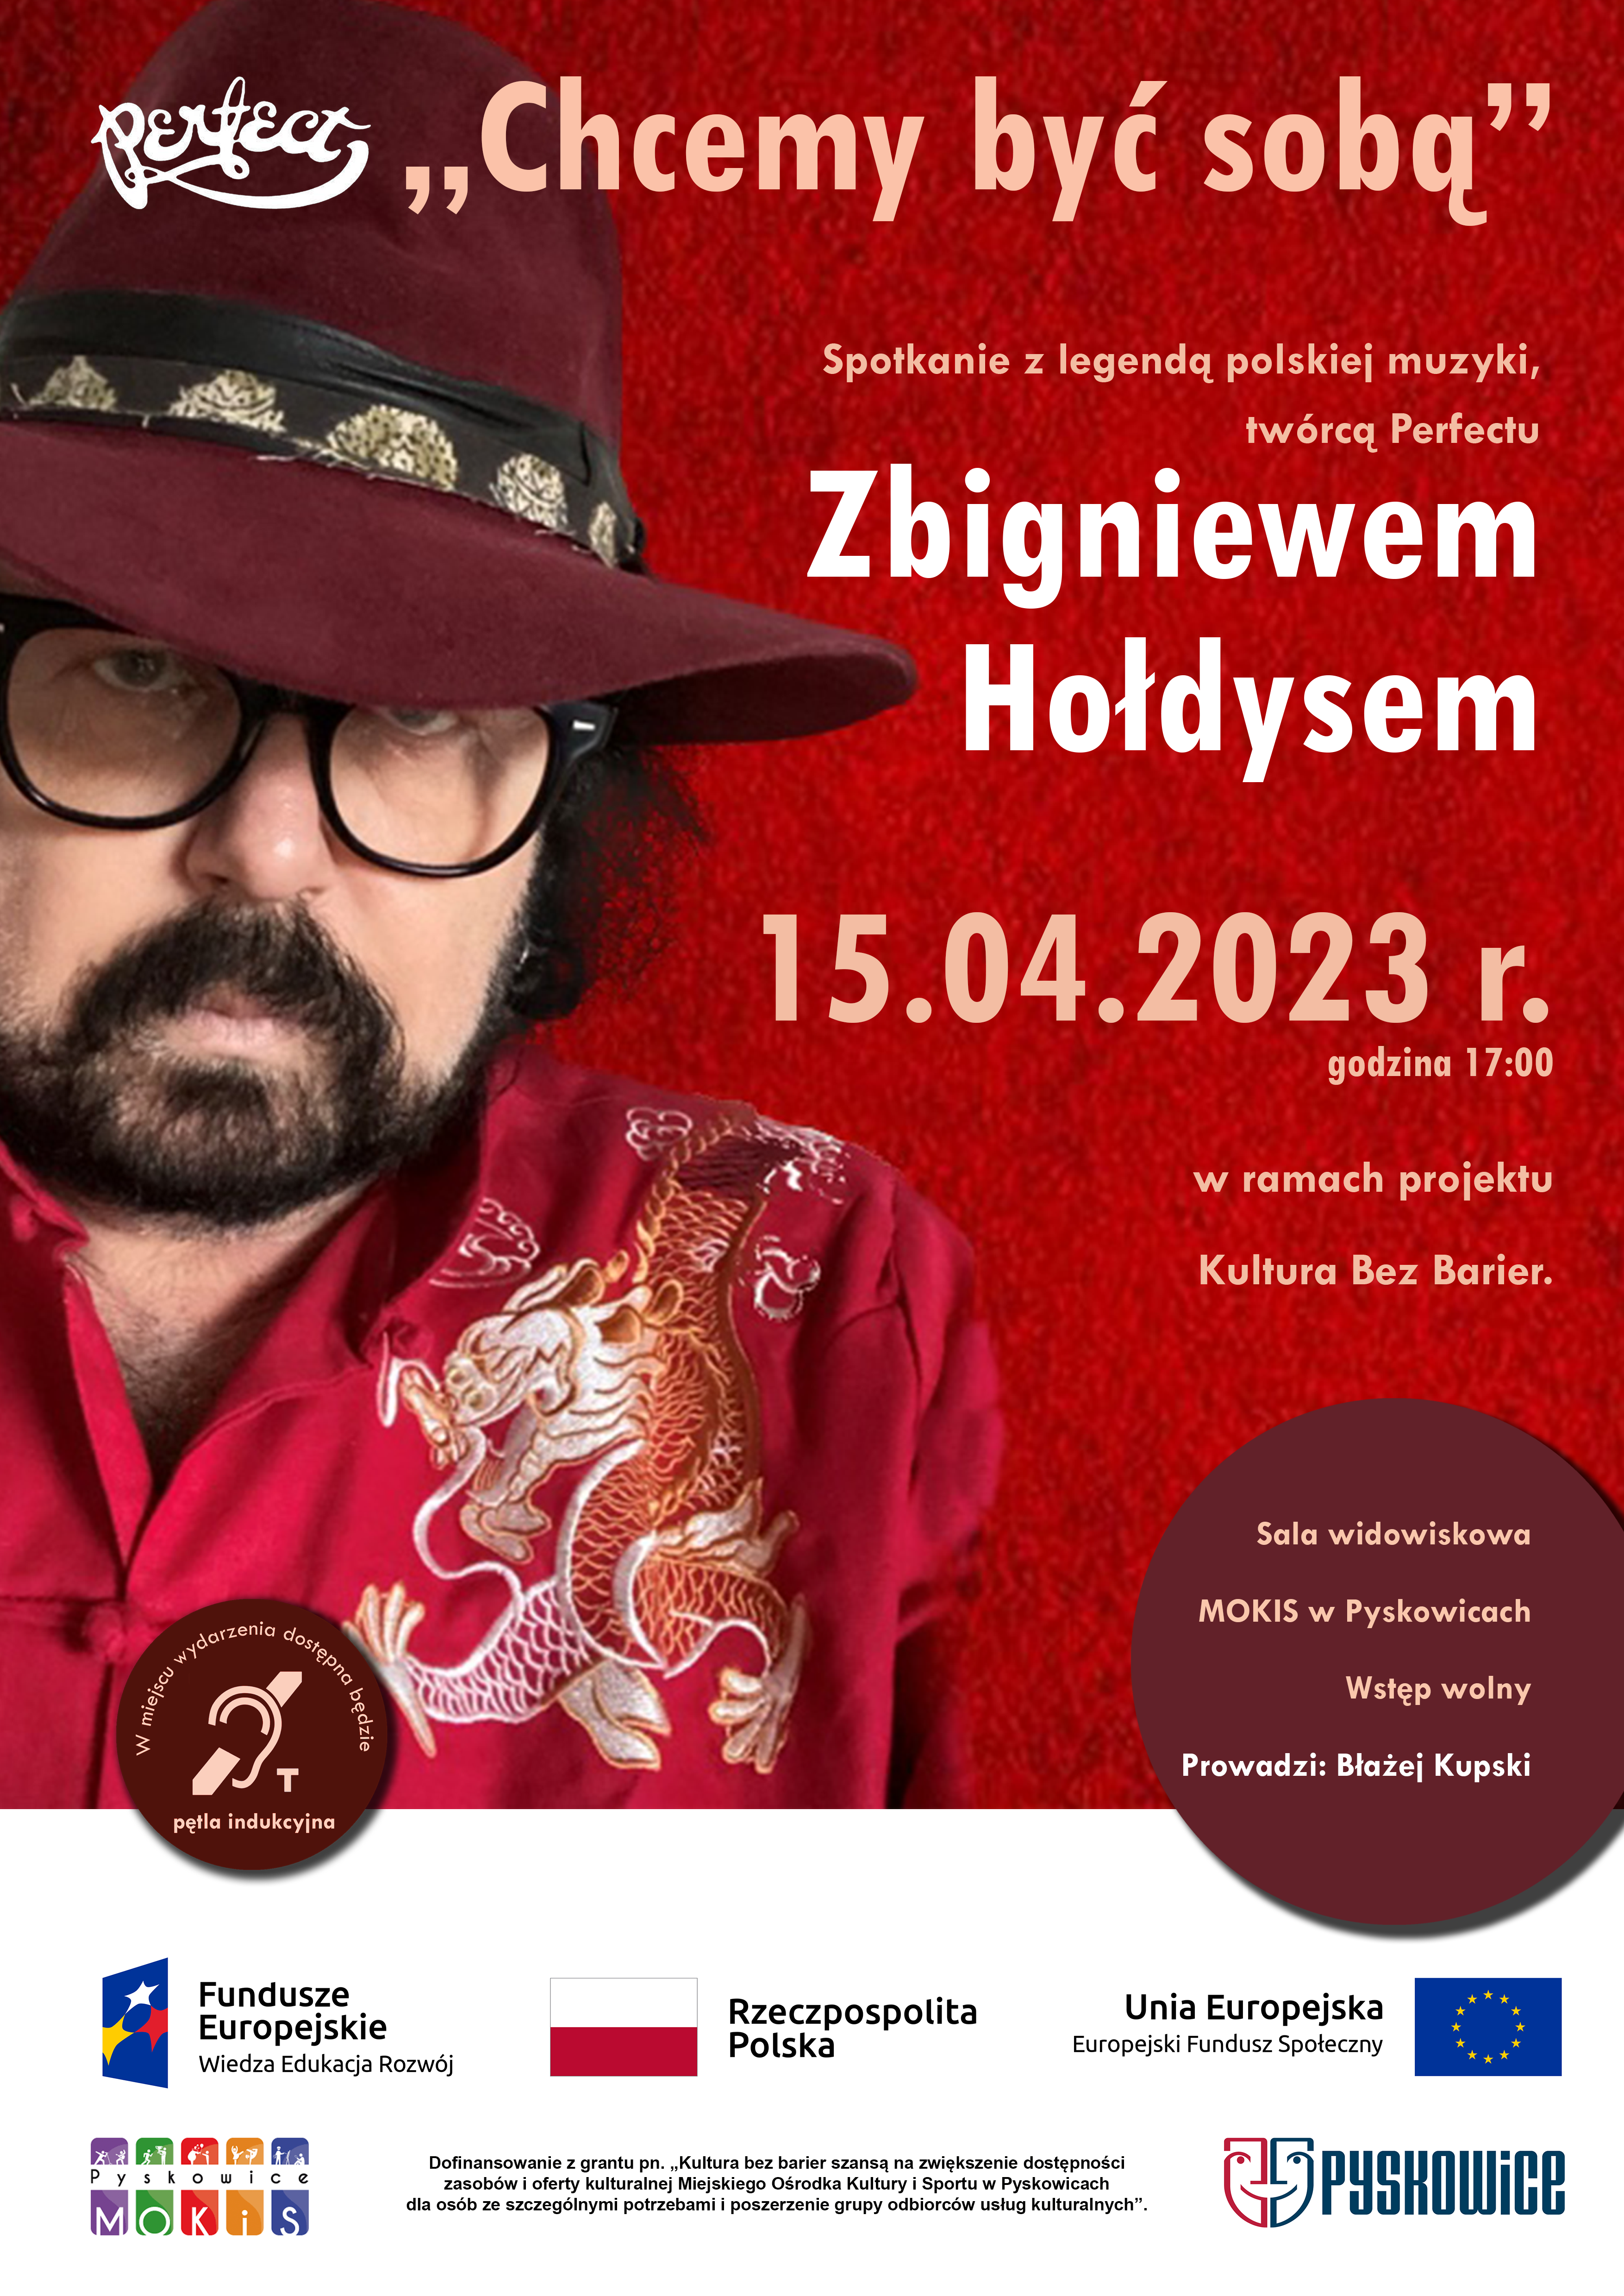 Spotkanie z legendą polskiej muzyki, twórcą Perfectu Zbigniewem Hołdysem